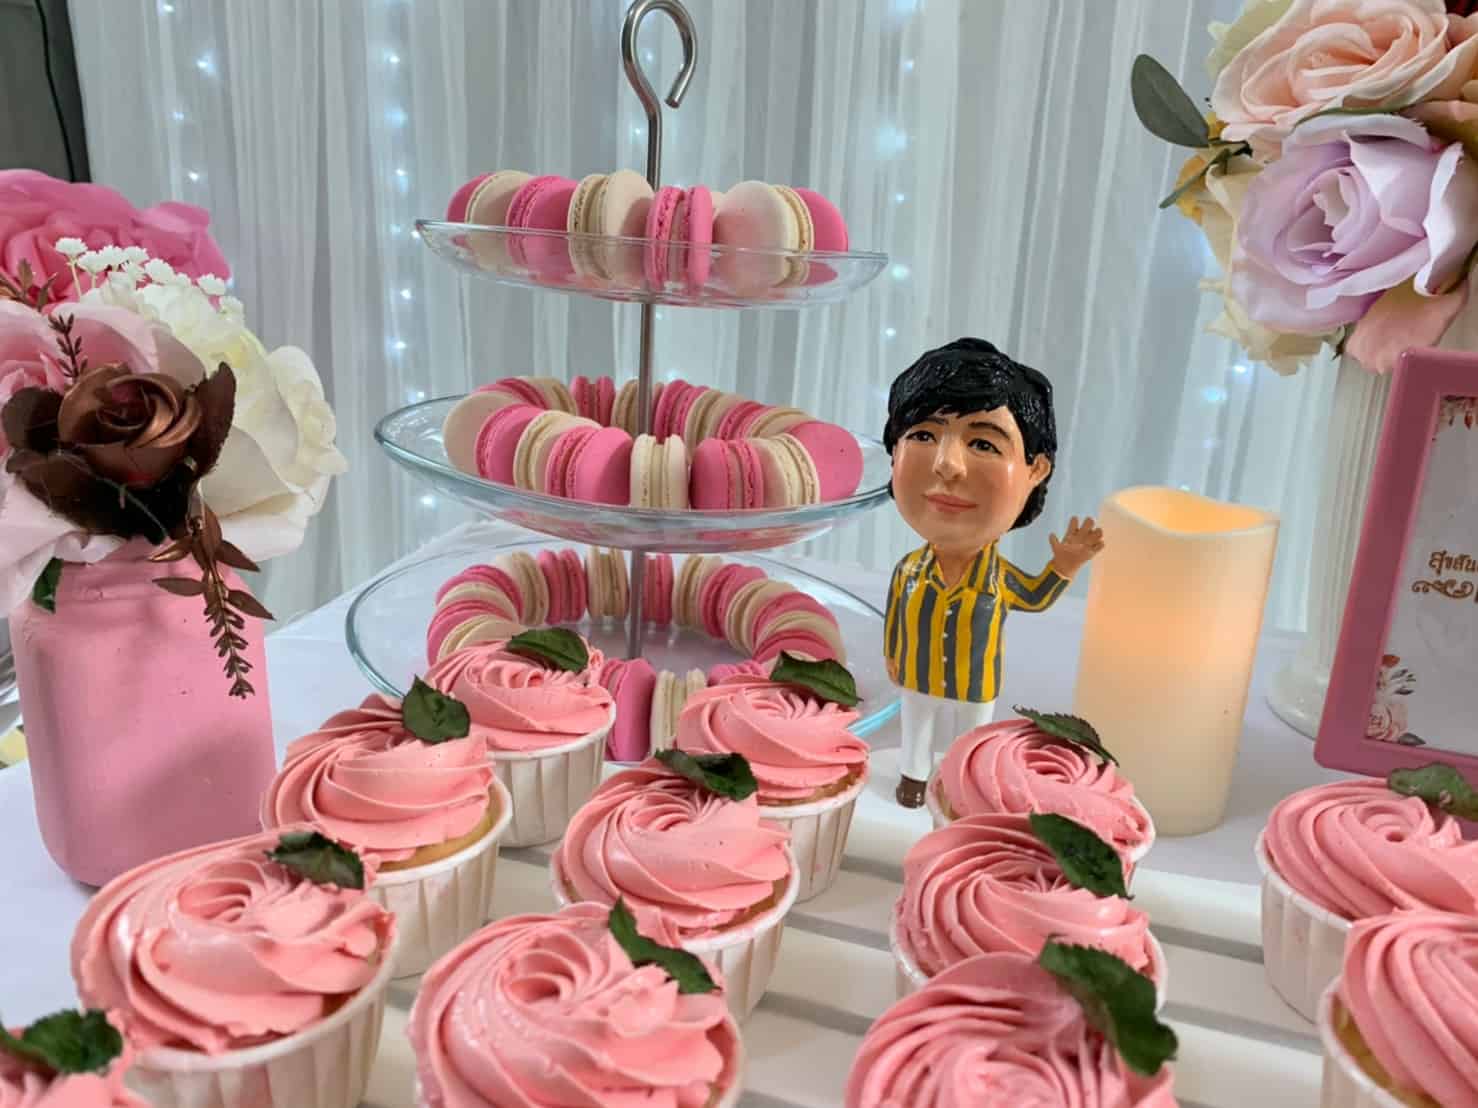 ไอเดียปาร์ตี้วันเกิดในโทนสีชมพู น่ารักสุดๆ ทั้งแบคดรอป ลูกโป่ง โต๊ะเค้ก เค้กวันเกิด และขนมตามธีมงาน 